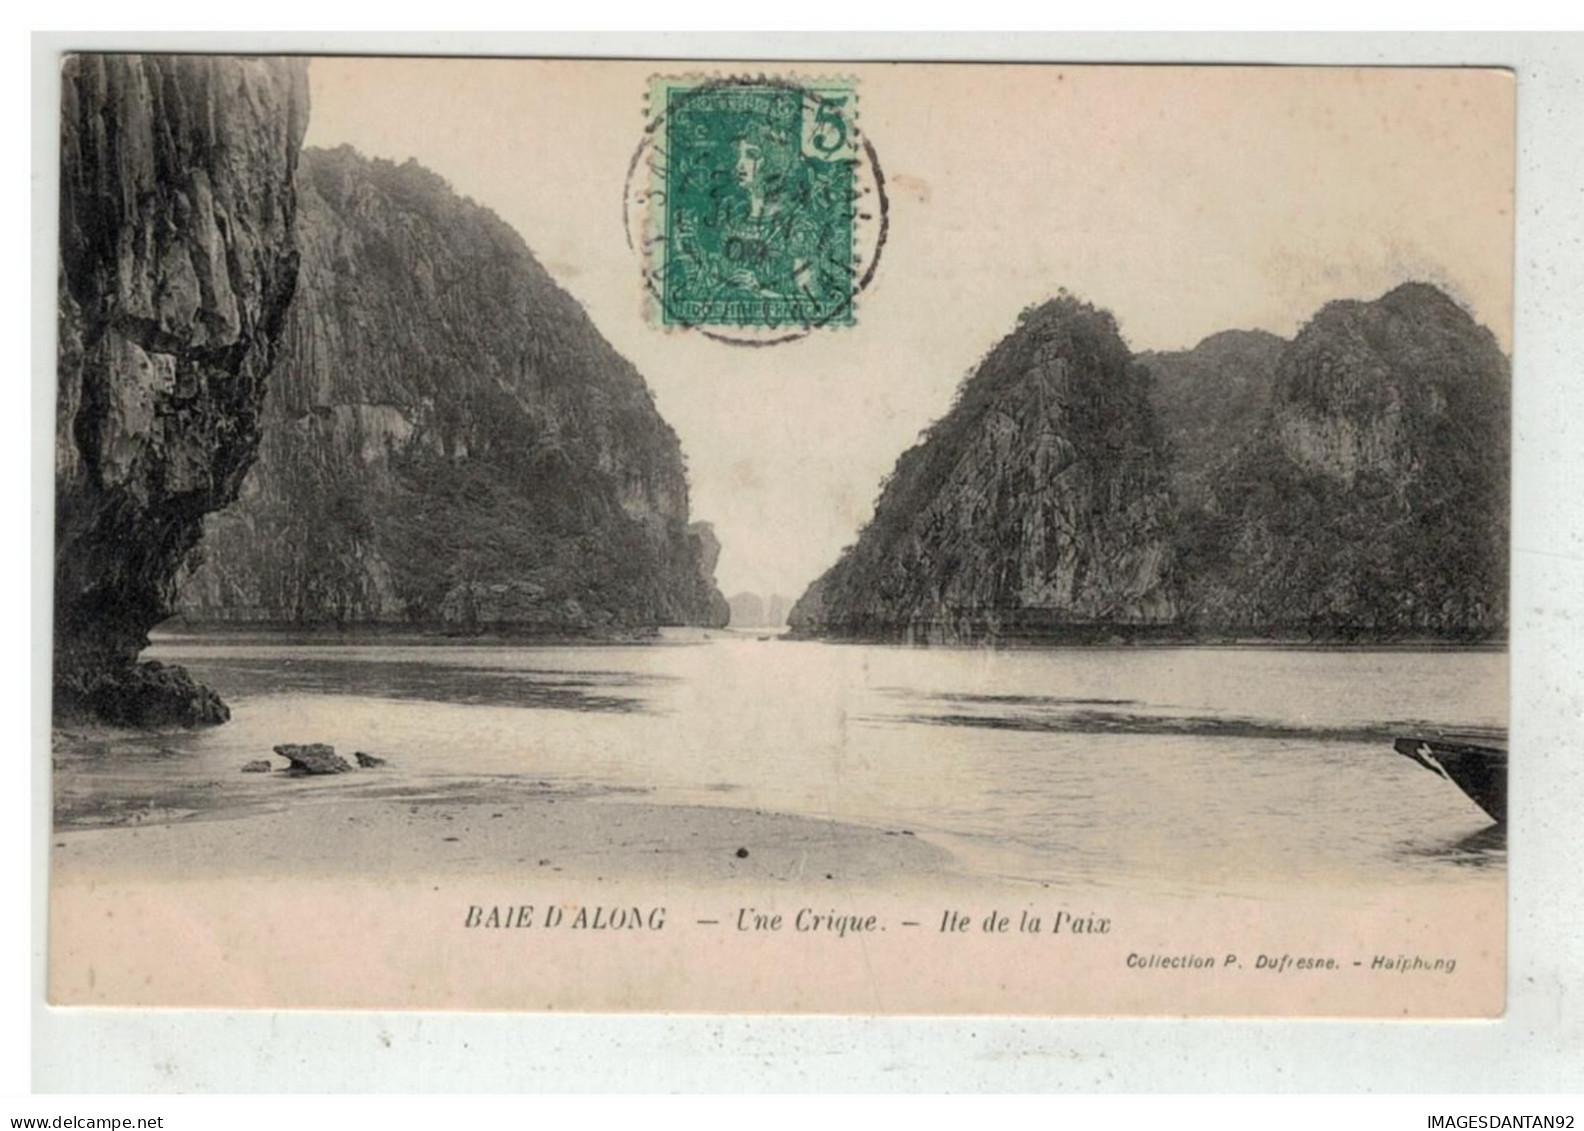 TONKIN INDOCHINE VIETNAM SAIGON #18631 BAIE D ALONG UNE CRIQUE ILE DE LA PAIX - Vietnam